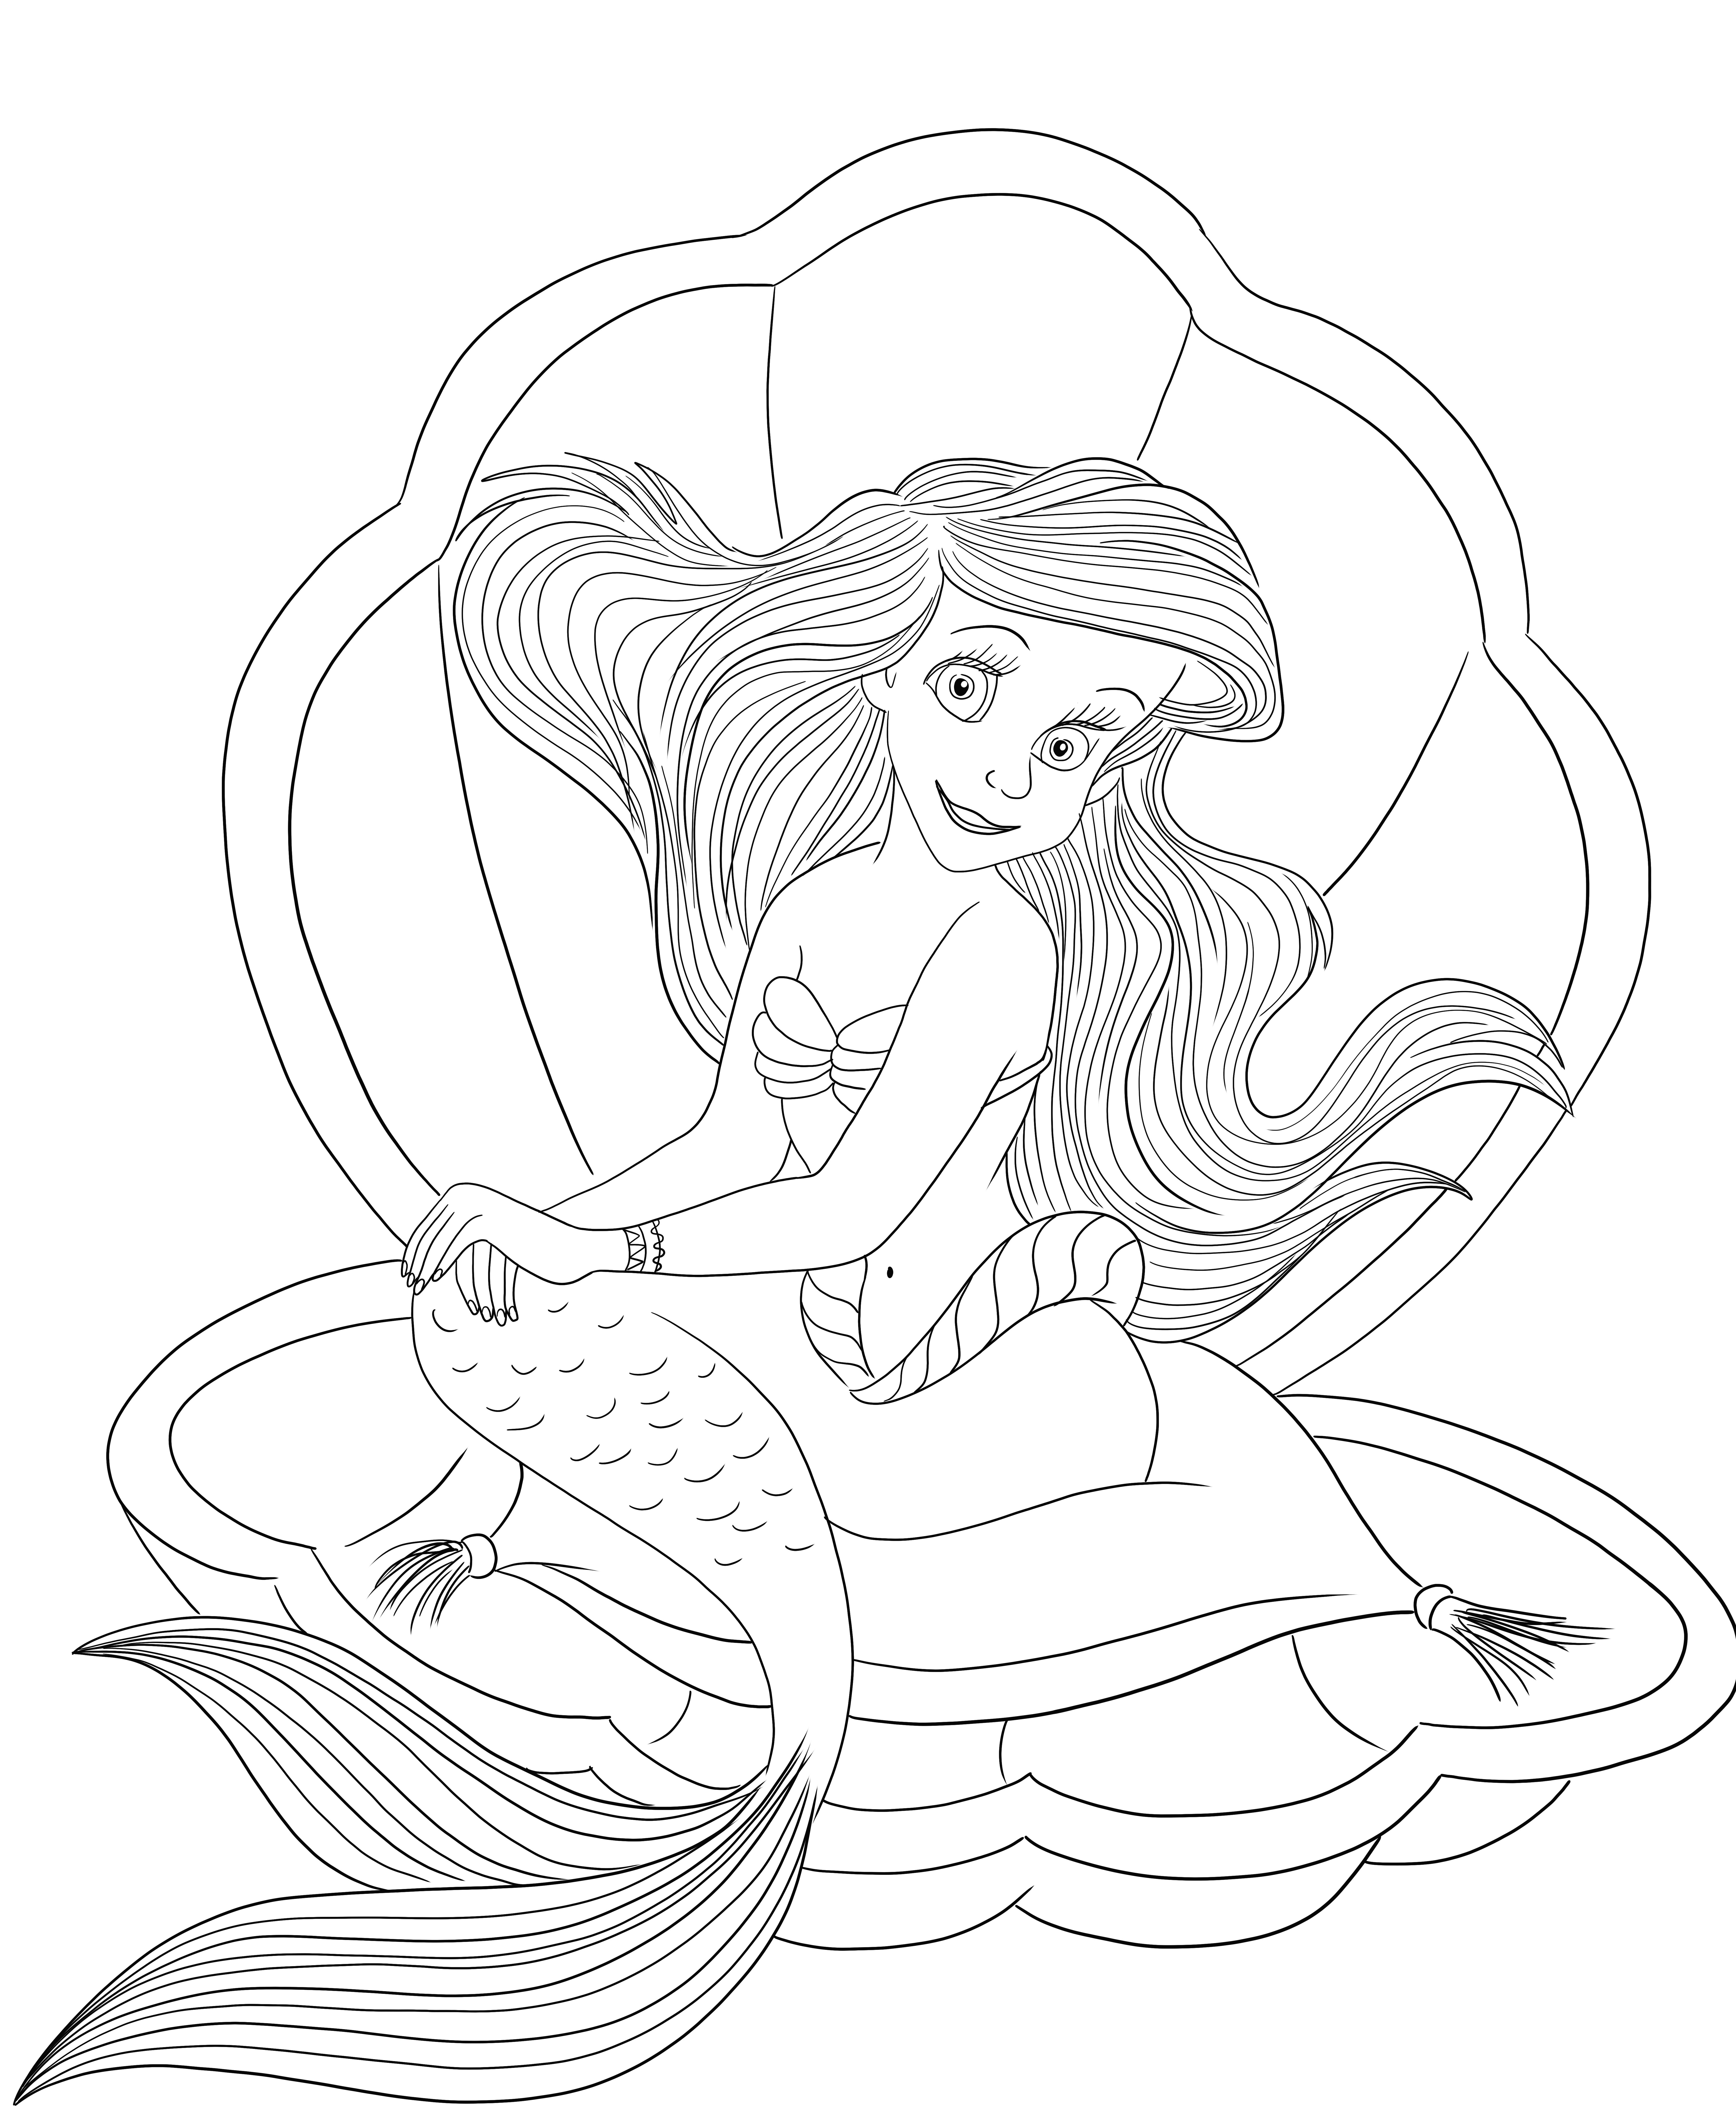 Mooie Ariel in een kokkelschelp gratis afdrukbaar op kleurenvel kleurplaat